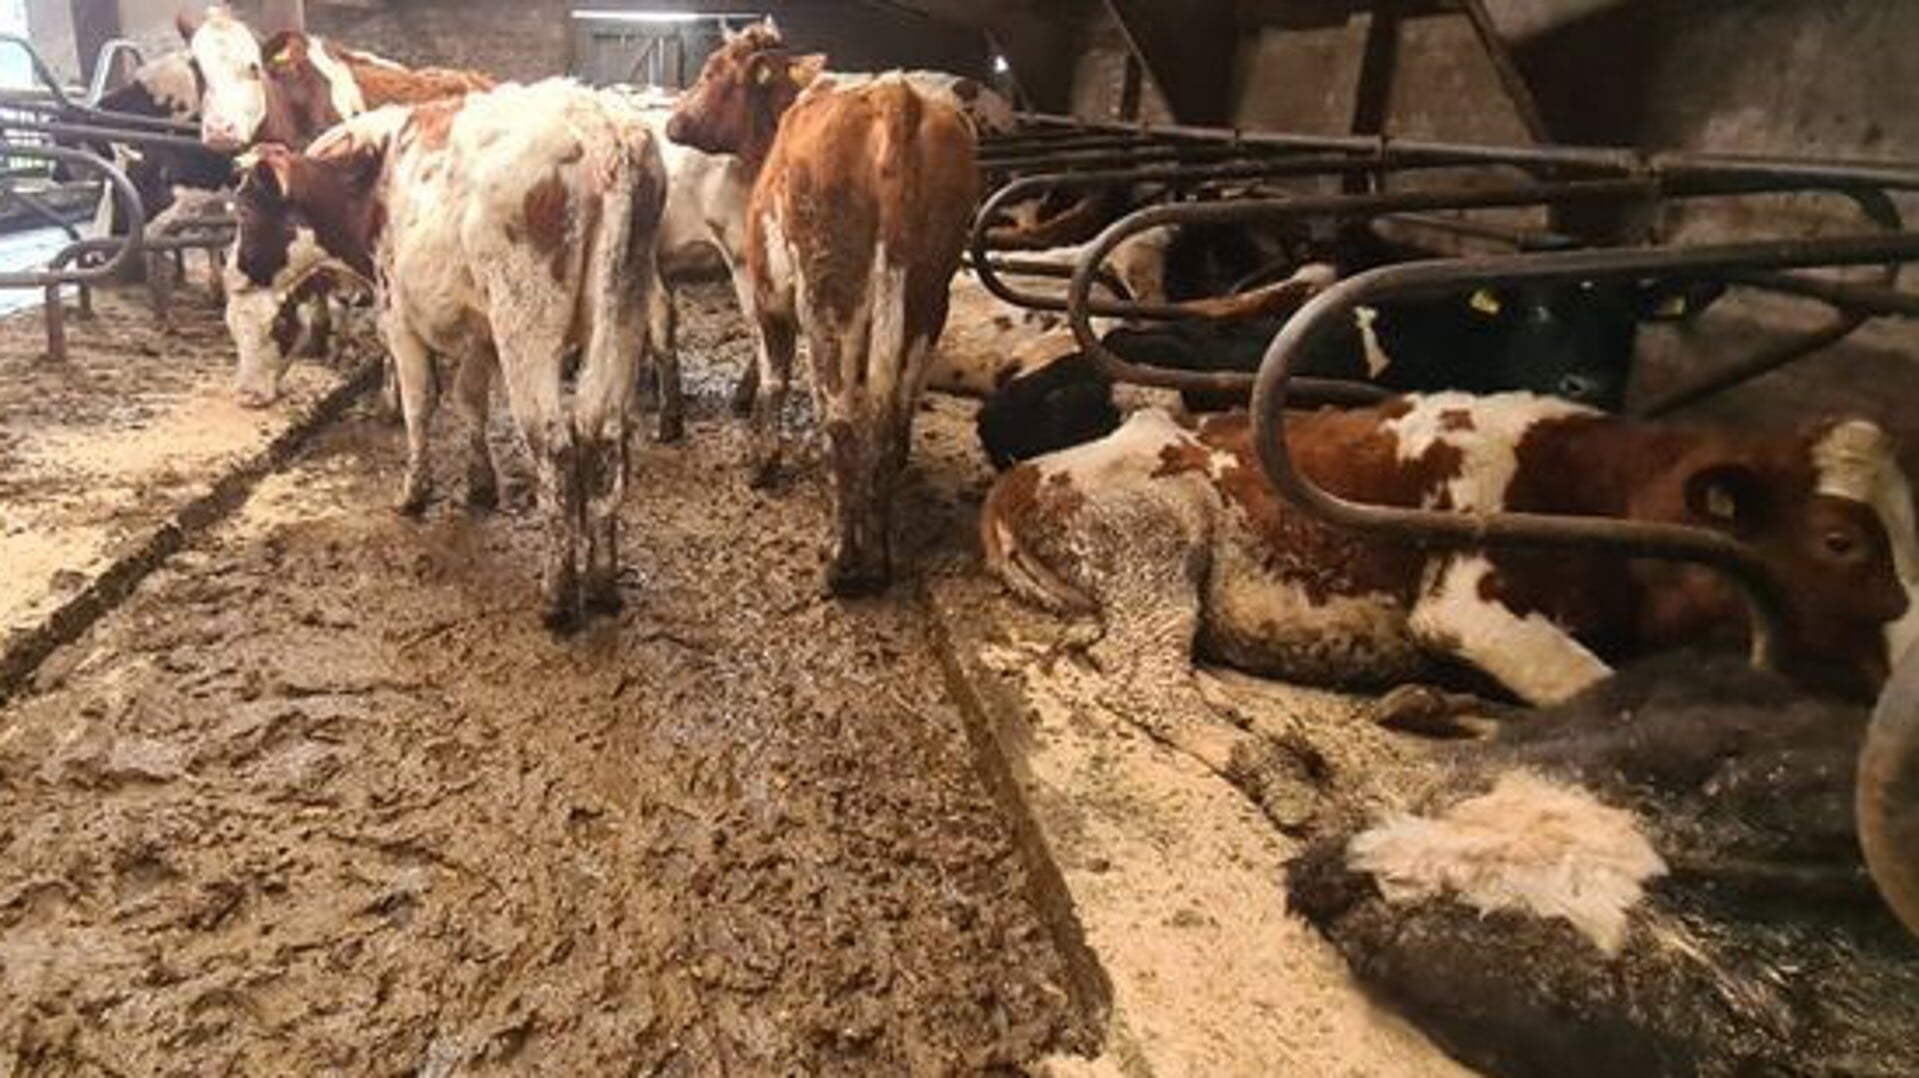 • De koeien stonden in een laag drab en de ligplaatsen in de boxen waren ook niet schoon en veilig.  